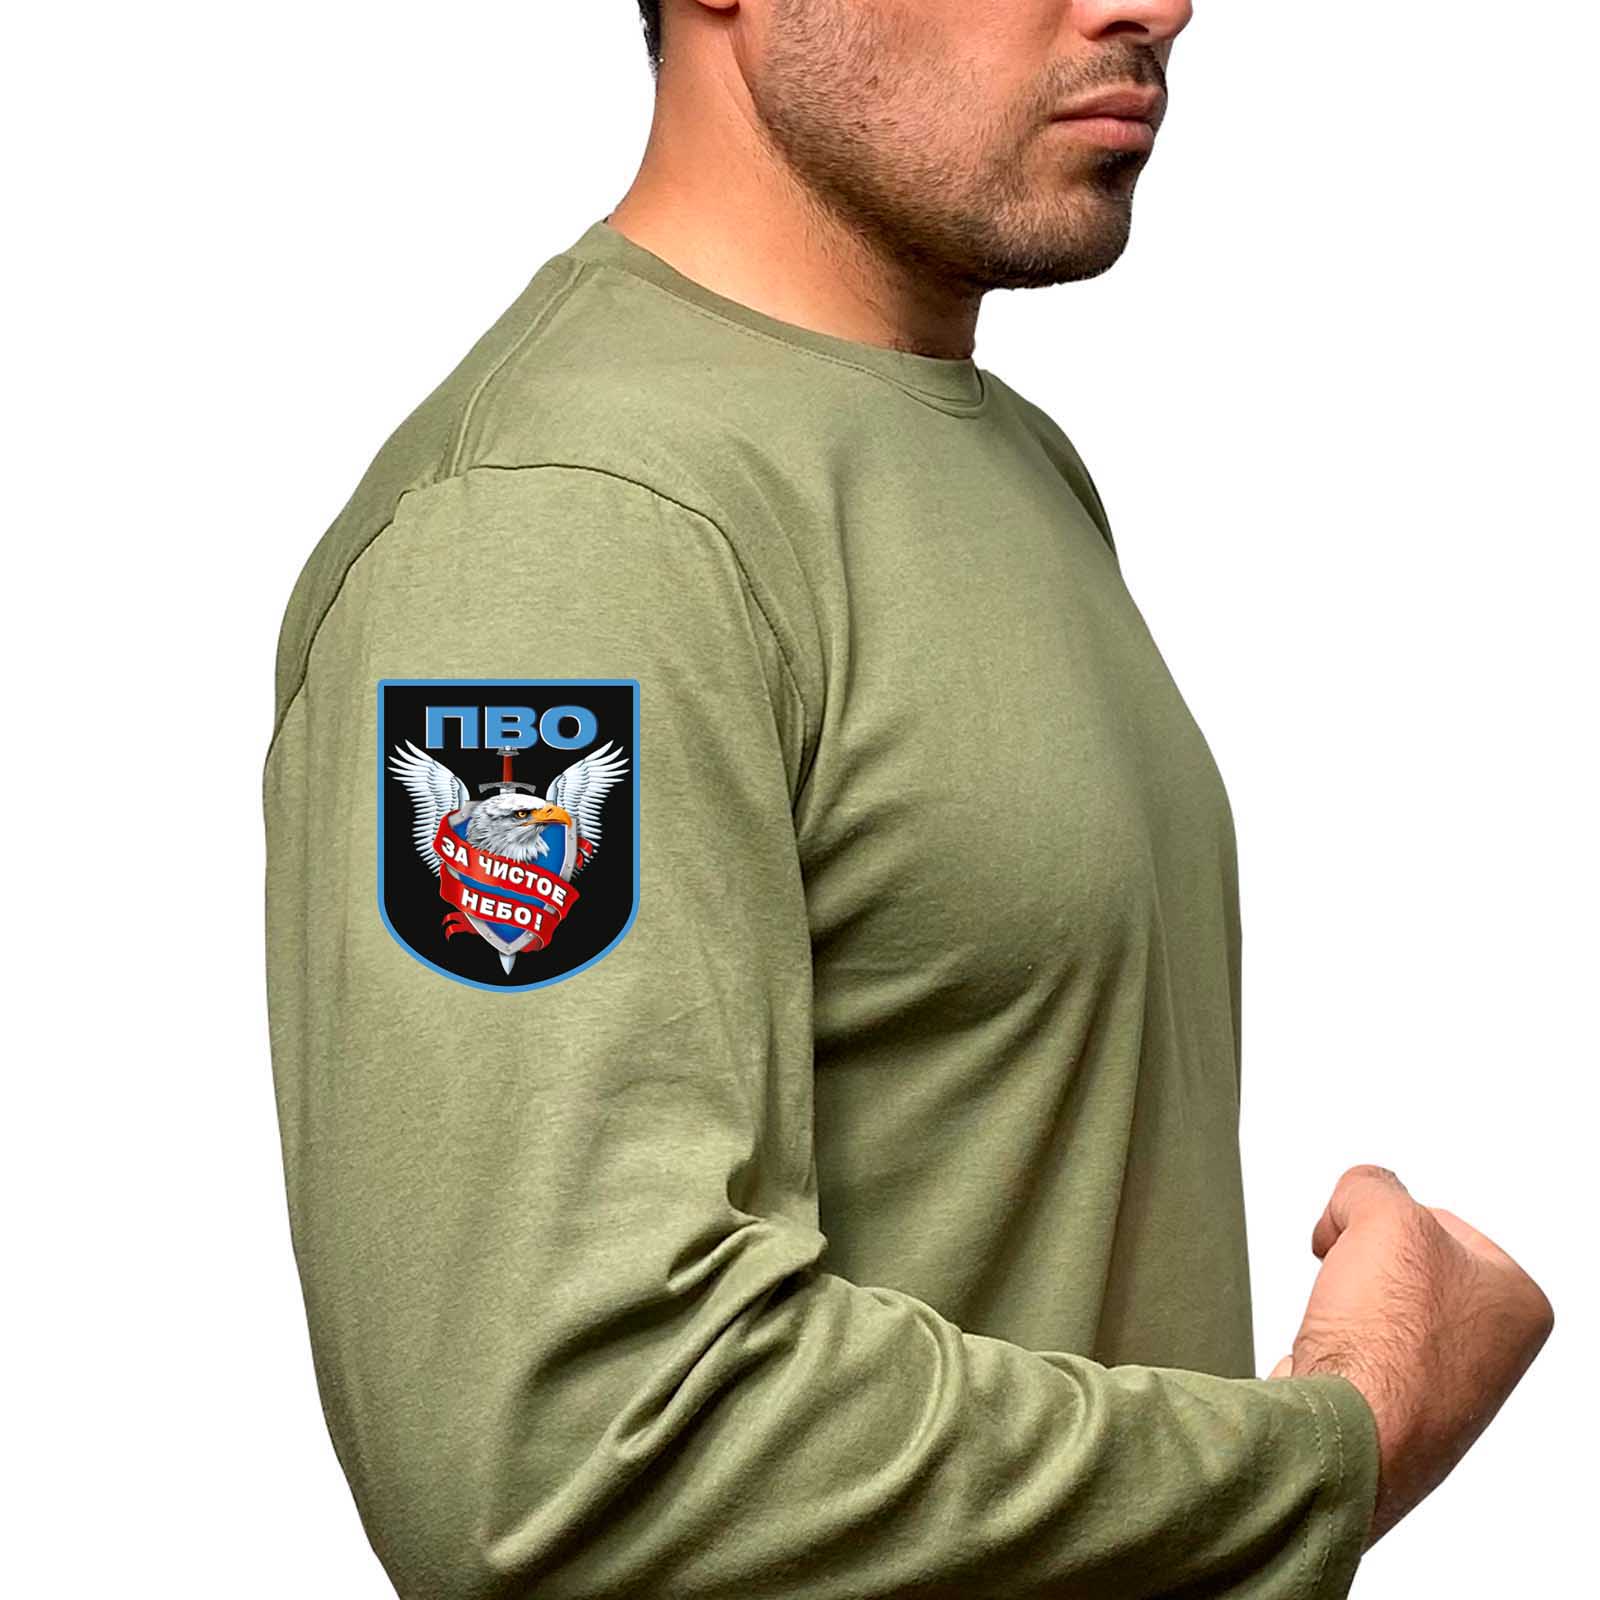 Купить мужскую футболку с длинным рукавом с термоаппликацией ПВО с доставкой